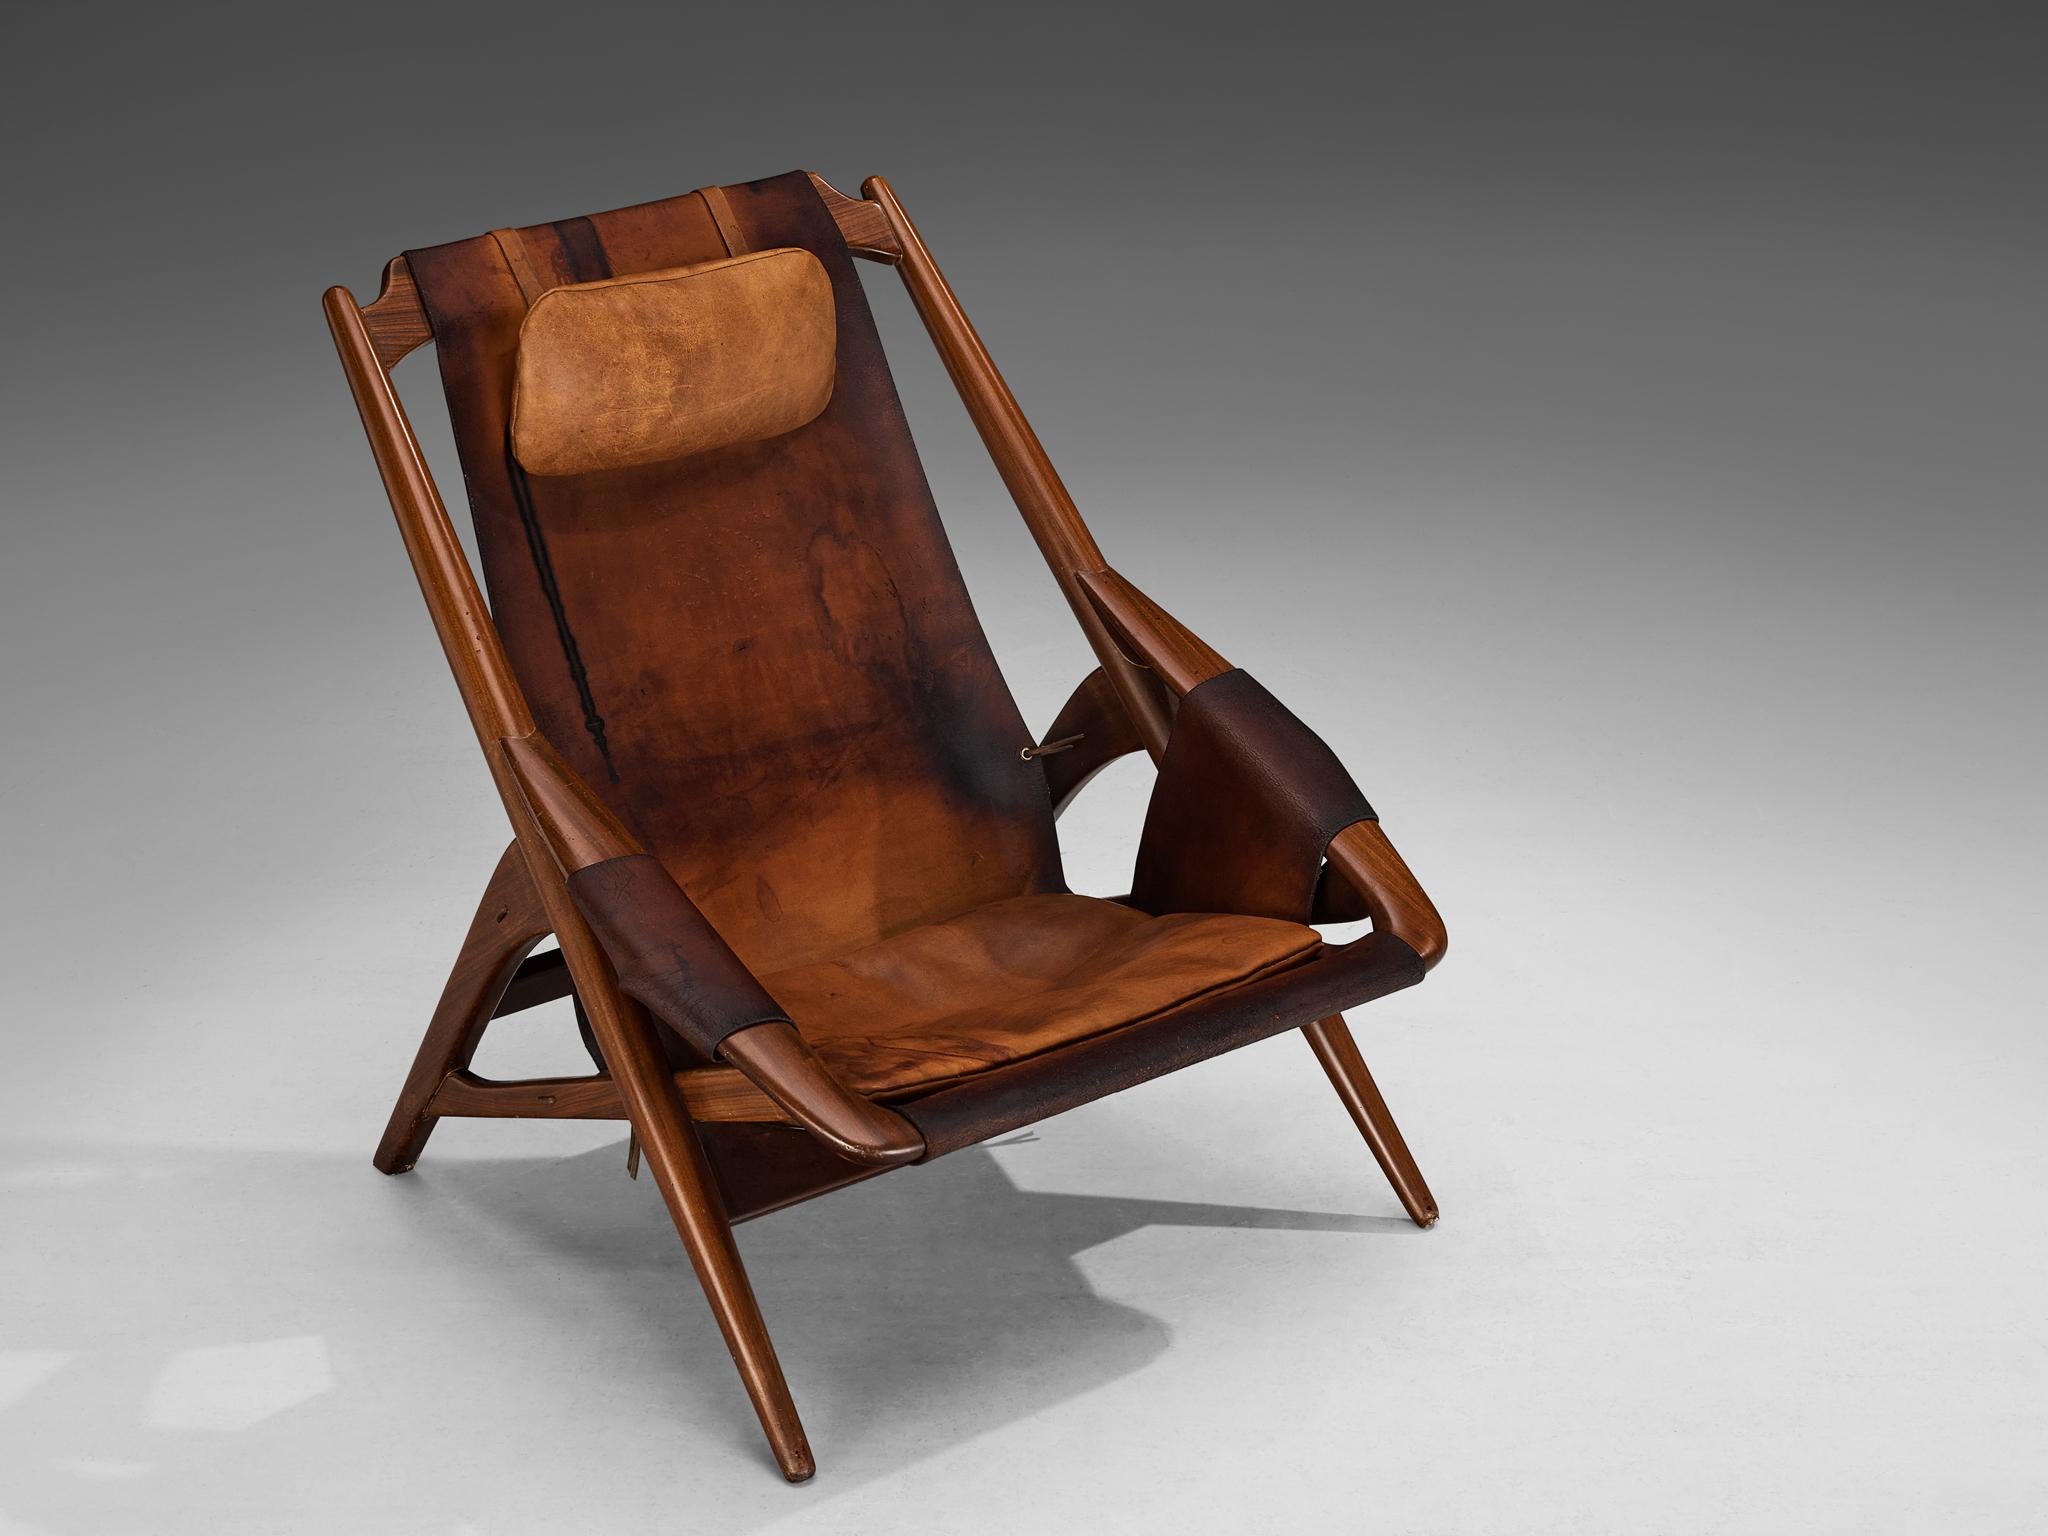 W. Andersag, Loungesessel, Teak, Sattelleder, Italien, 1960er Jahre

Ein exquisiter Sessel, entworfen von W.D. Ansersag. Sein Design ist von einer auffallenden Dynamik geprägt, die durch die scharfen Linien des Holzrahmens unterstrichen wird. Der